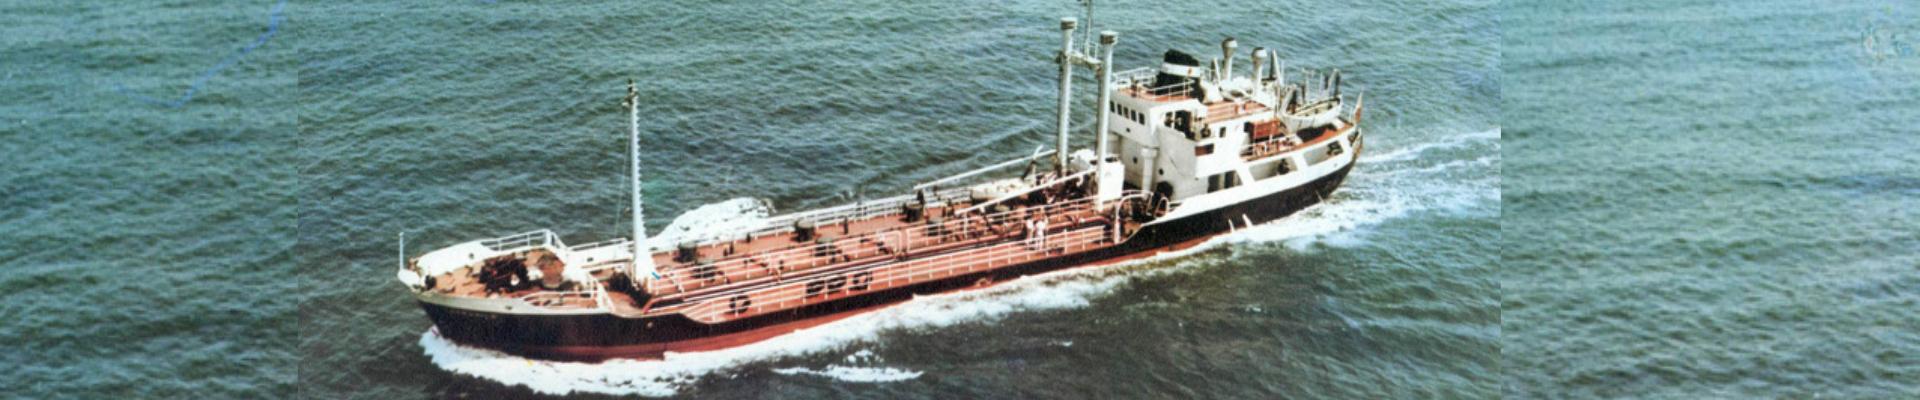 Buque auxiliar Camposilo navegando en alta mar, construido en 1965